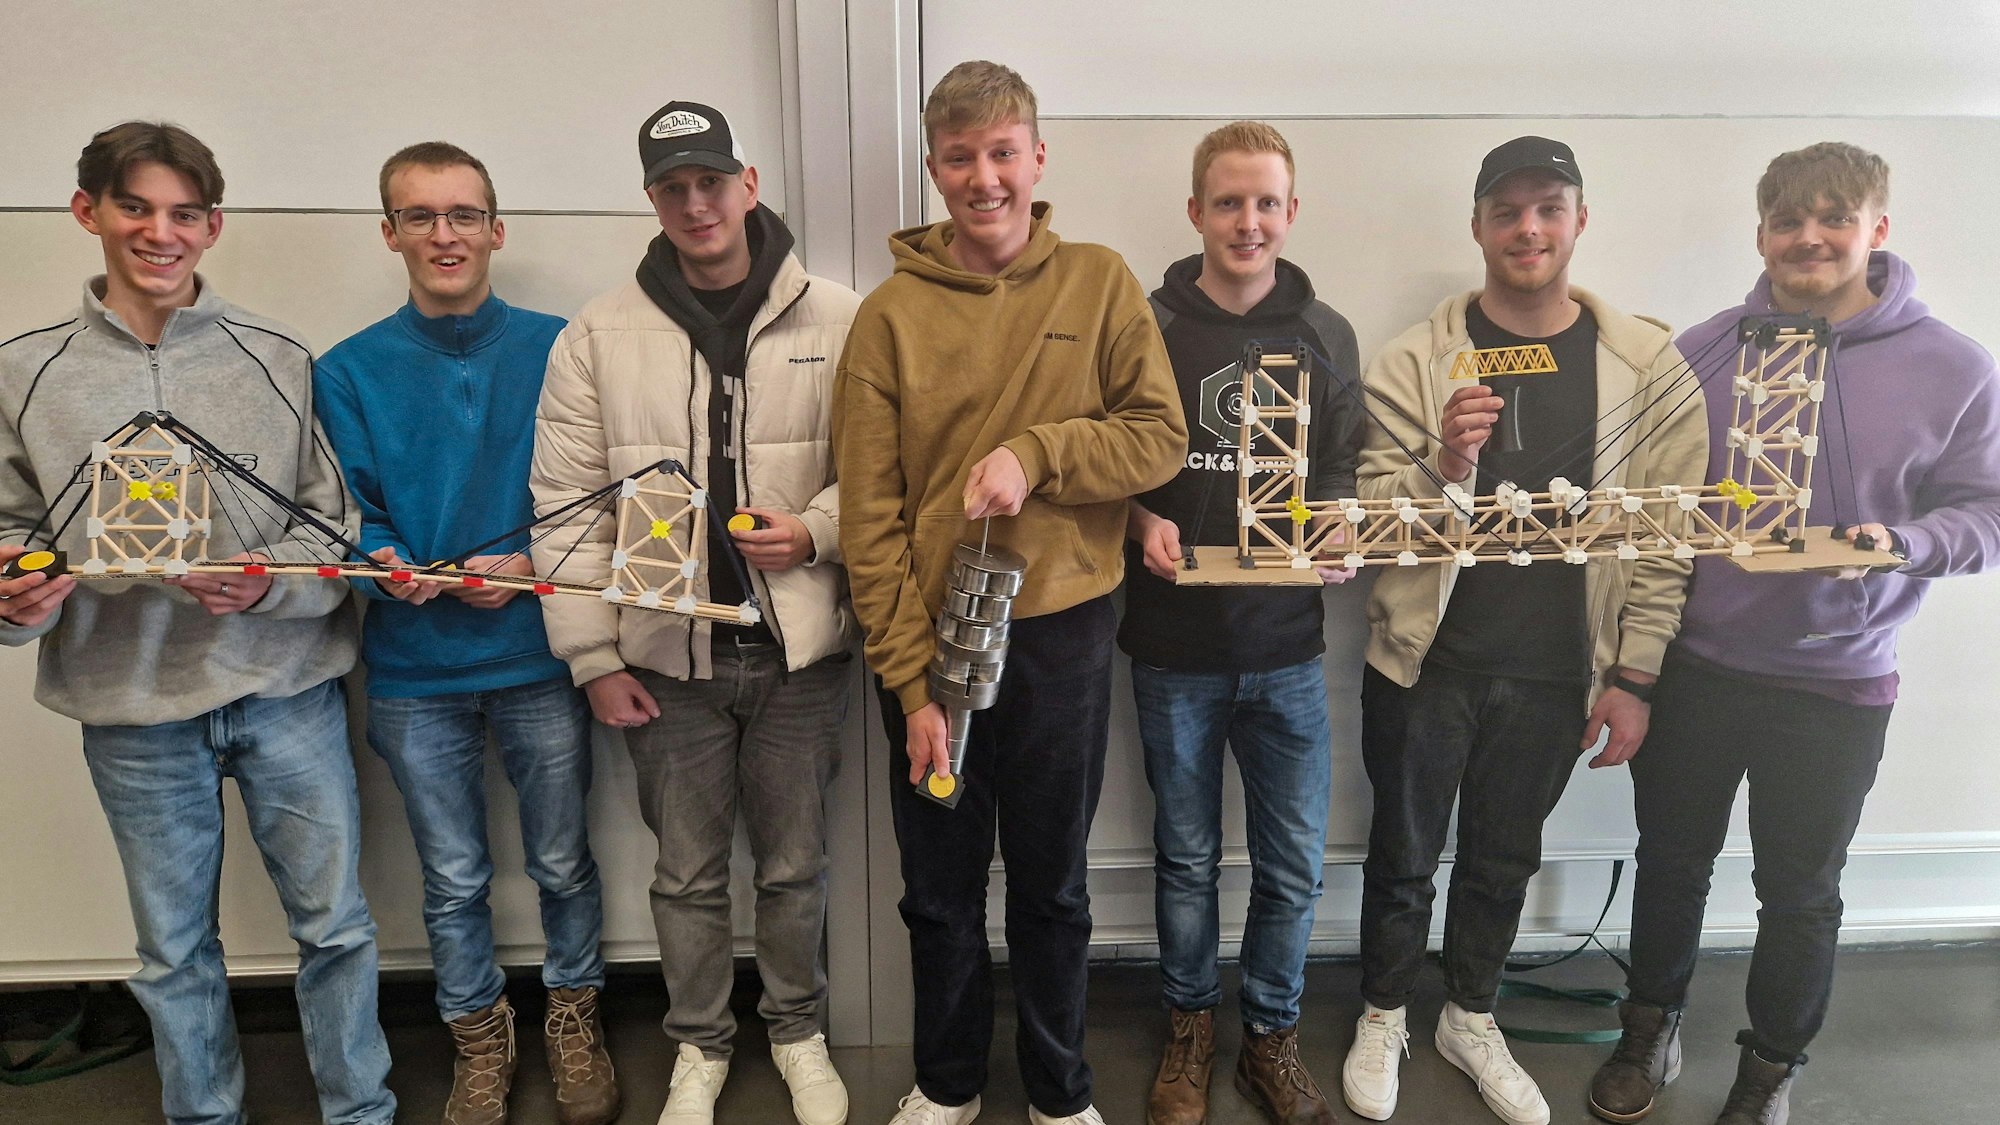 Gruppenfoto einer Studentengruppe. Diese präsentiert eine selbstgebaute Brückenkonstruktion.